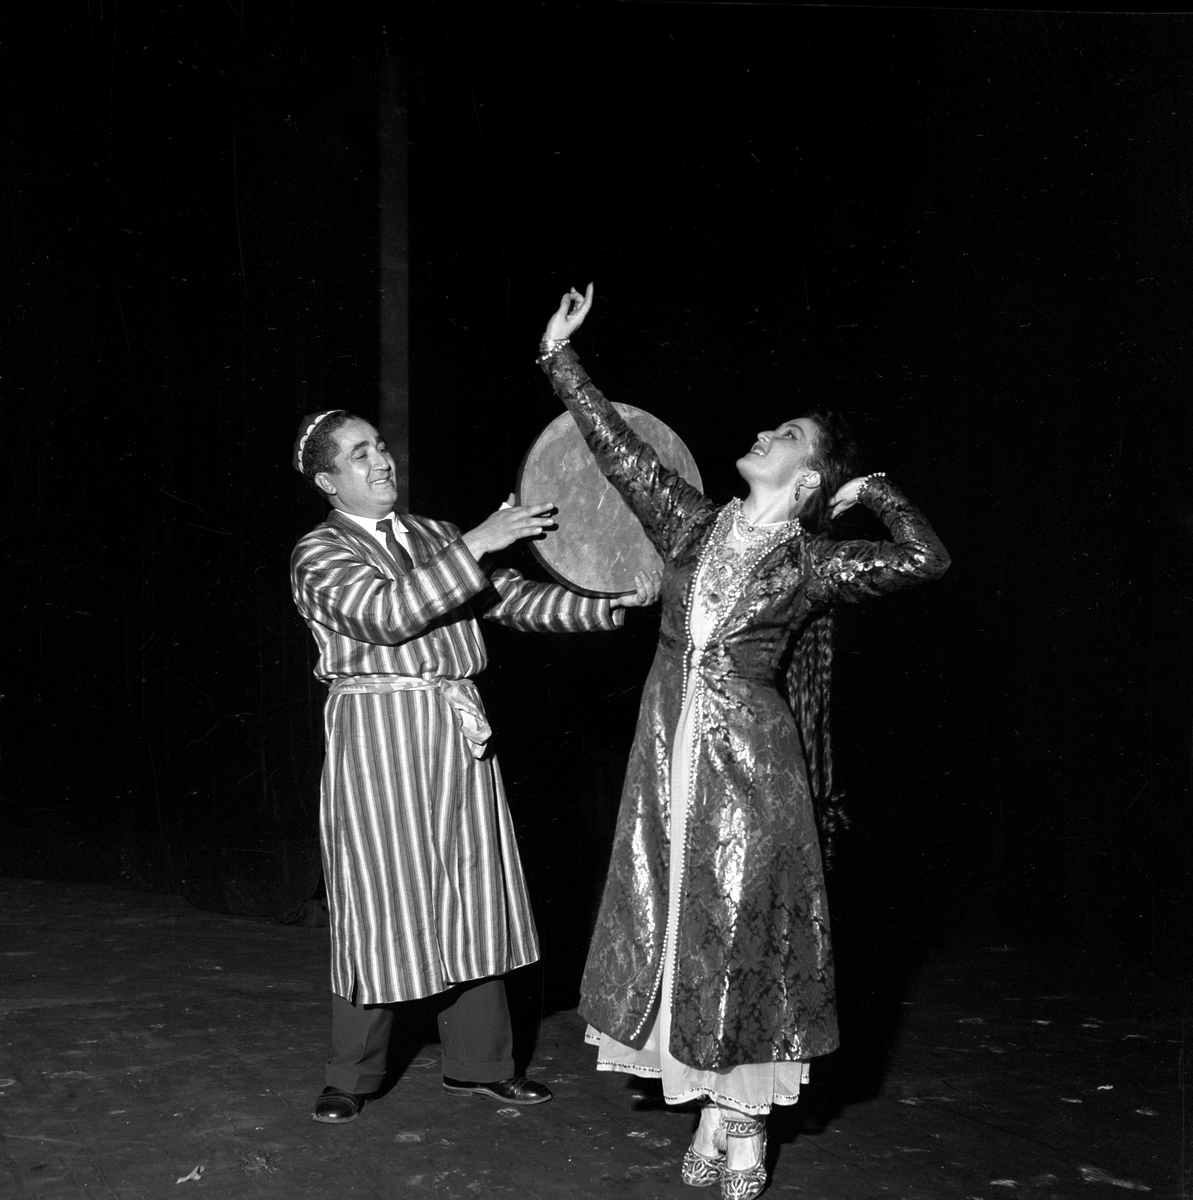 Serie. Russiske dansere i Folketeatret.
Fotografert 1956

